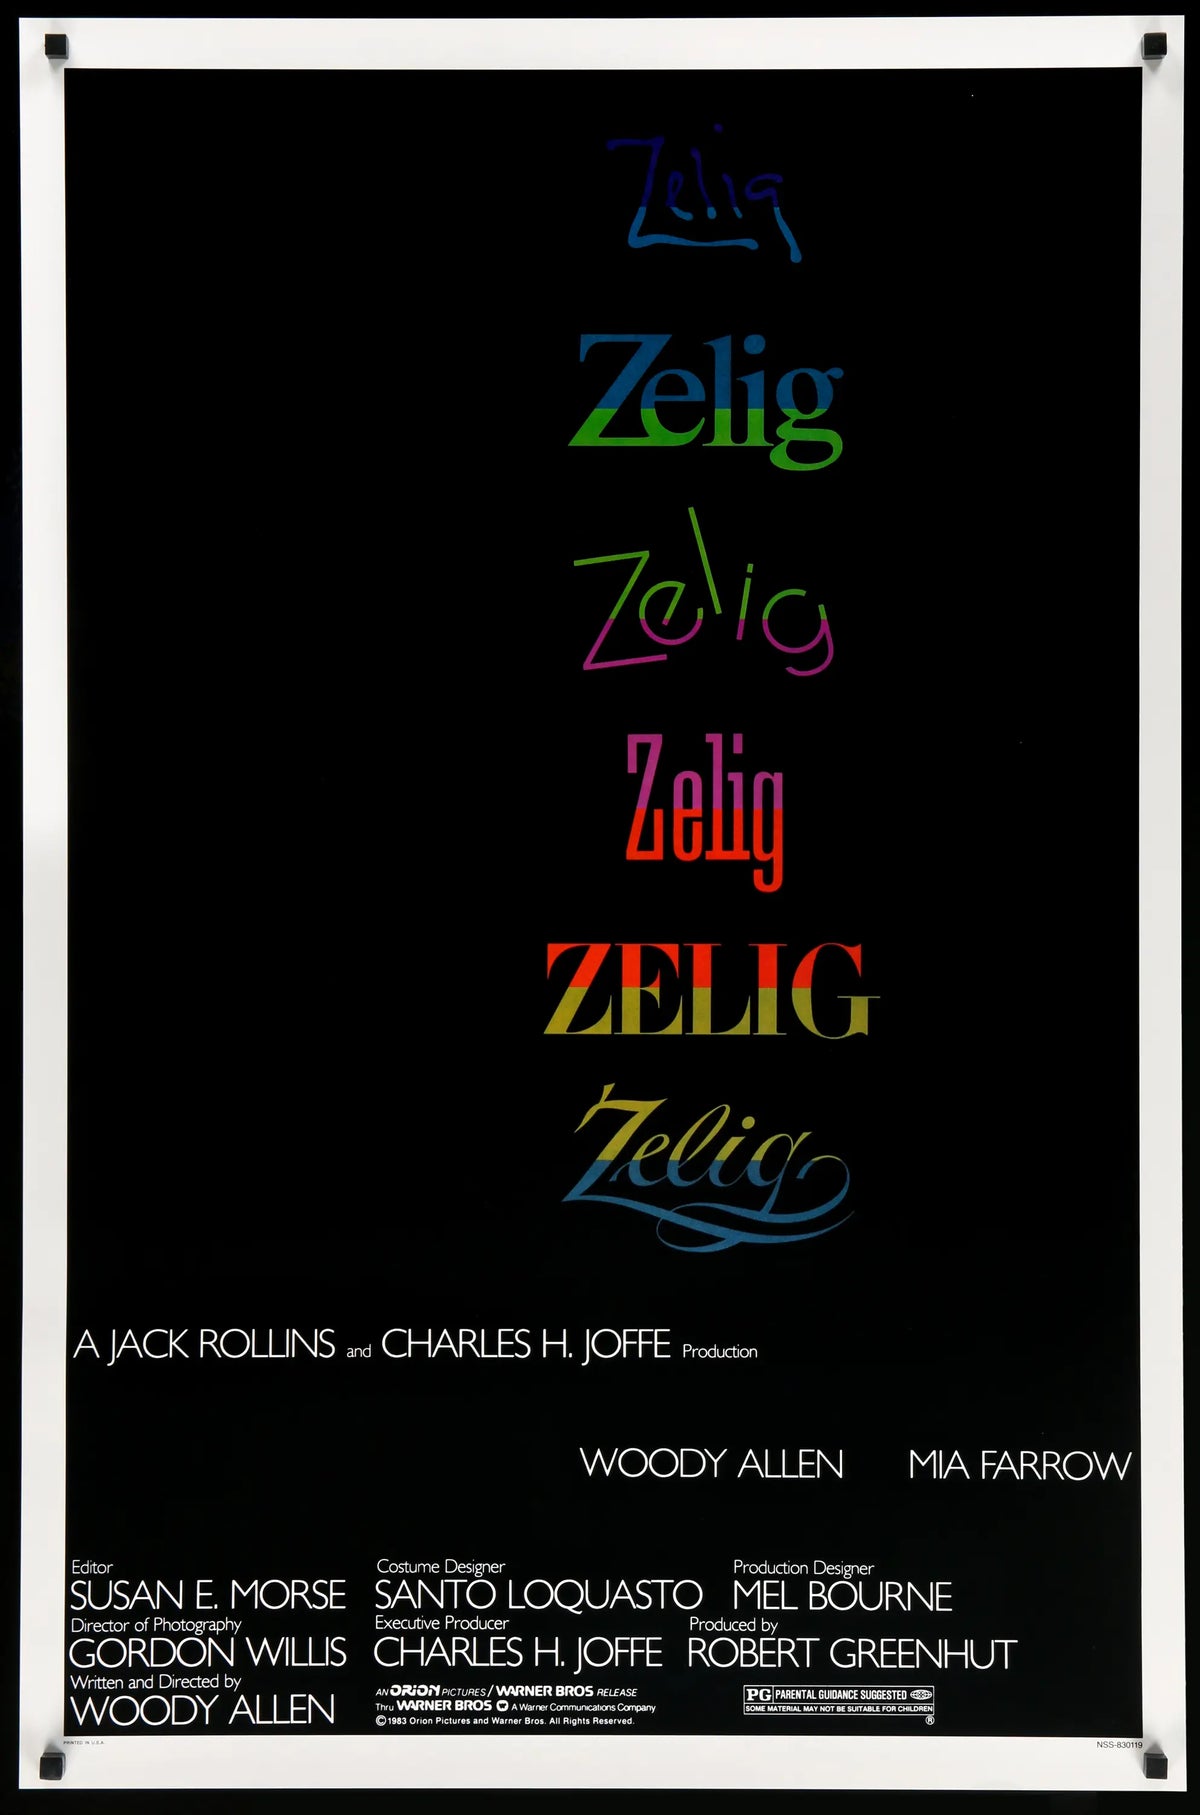 Zelig (1983) original movie poster for sale at Original Film Art